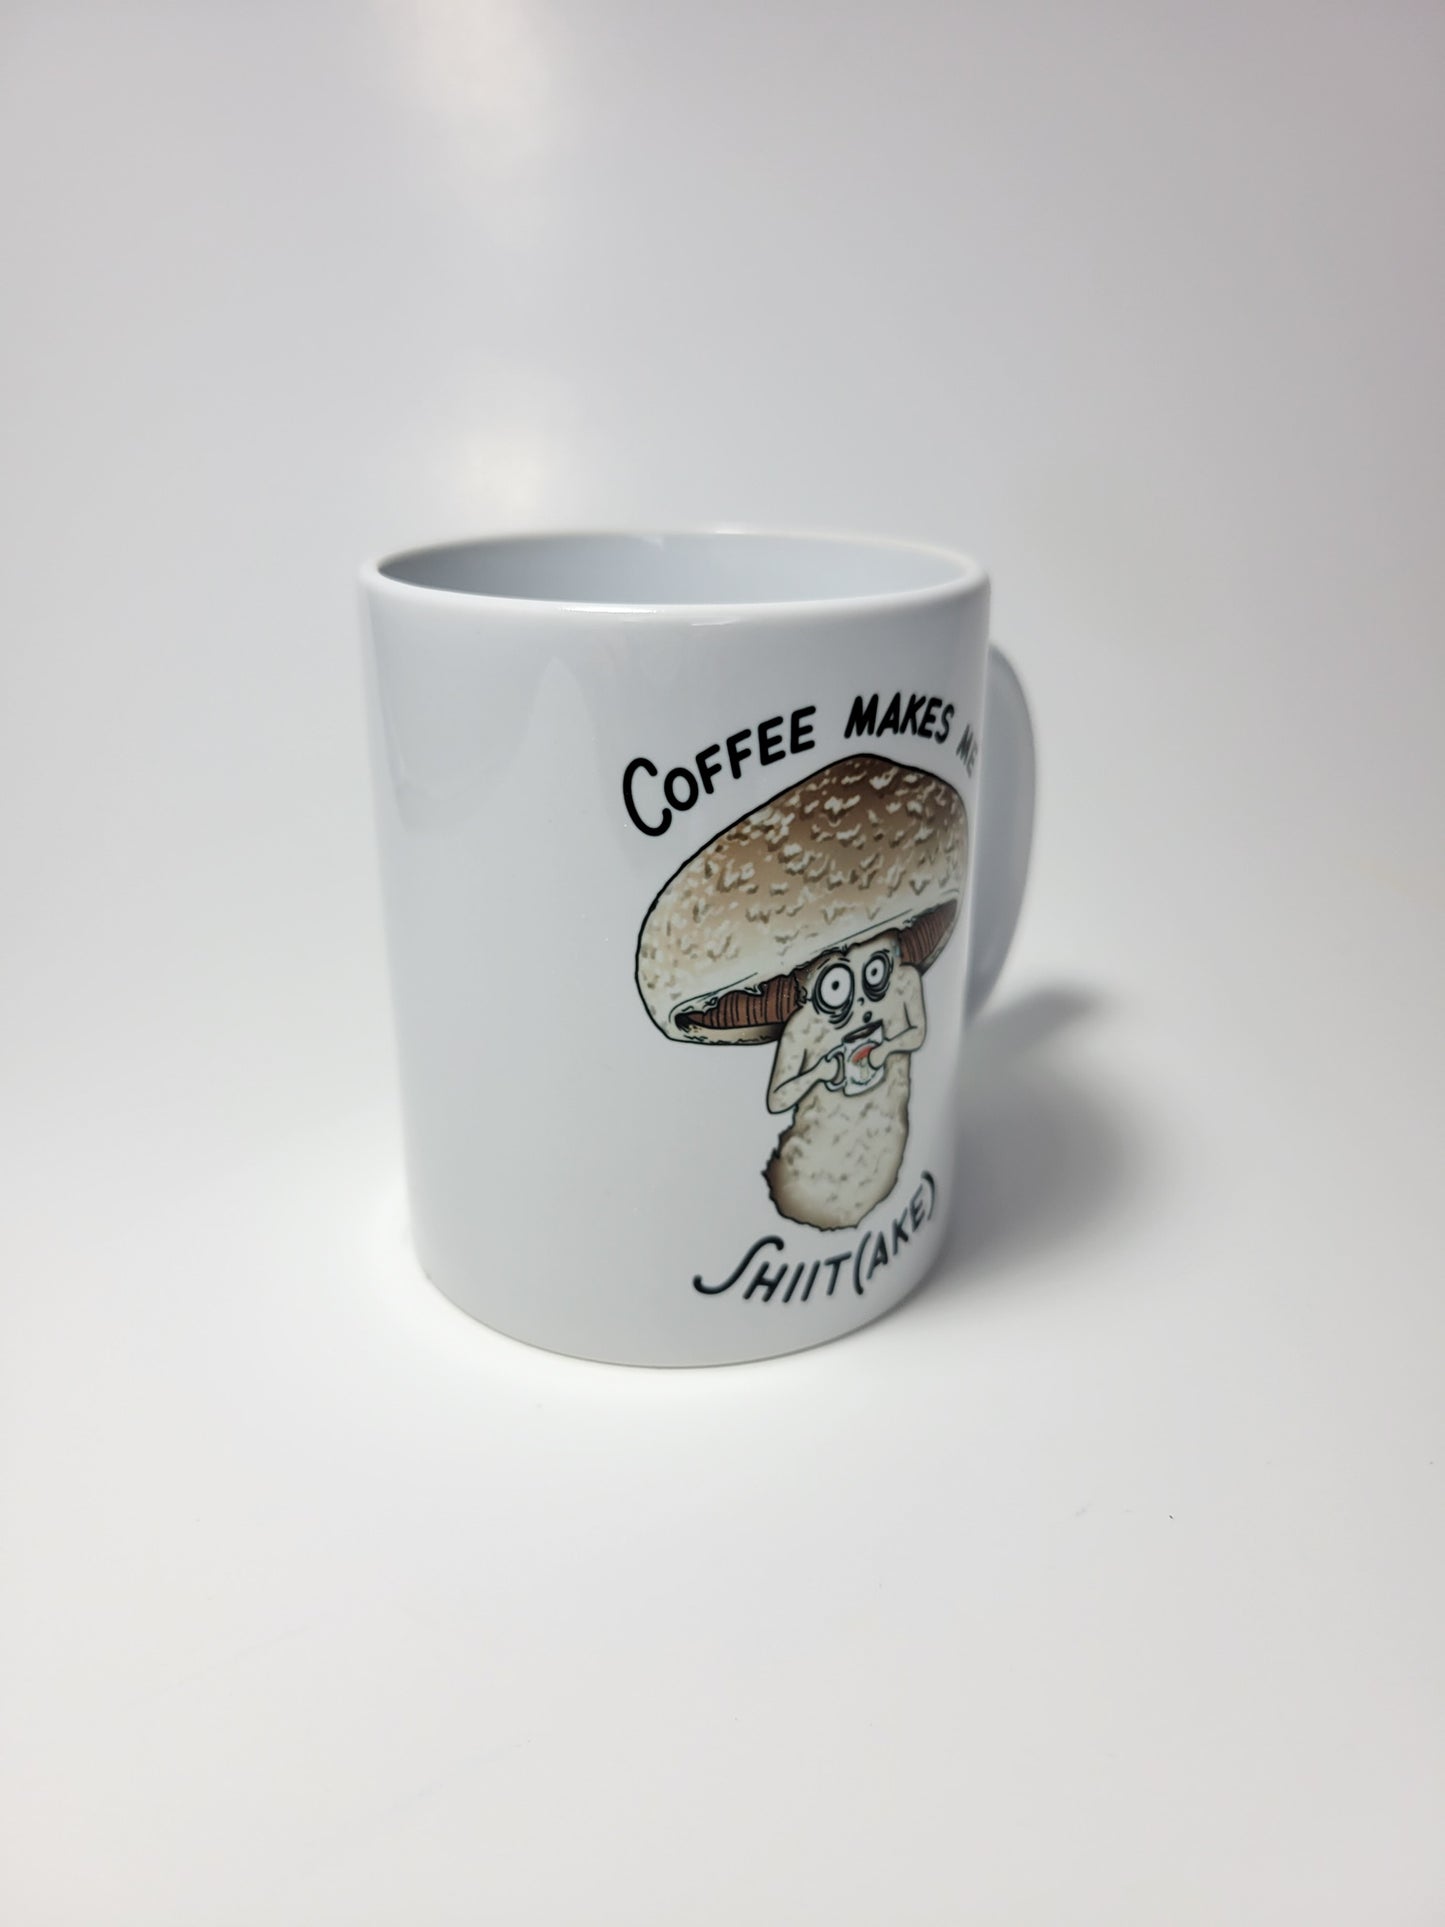 Coffee Makes Me Shiitake | Funny Mushroom Mug | Mushroom Artwork on Ceramic Cup | 11oz/15oz Sizes